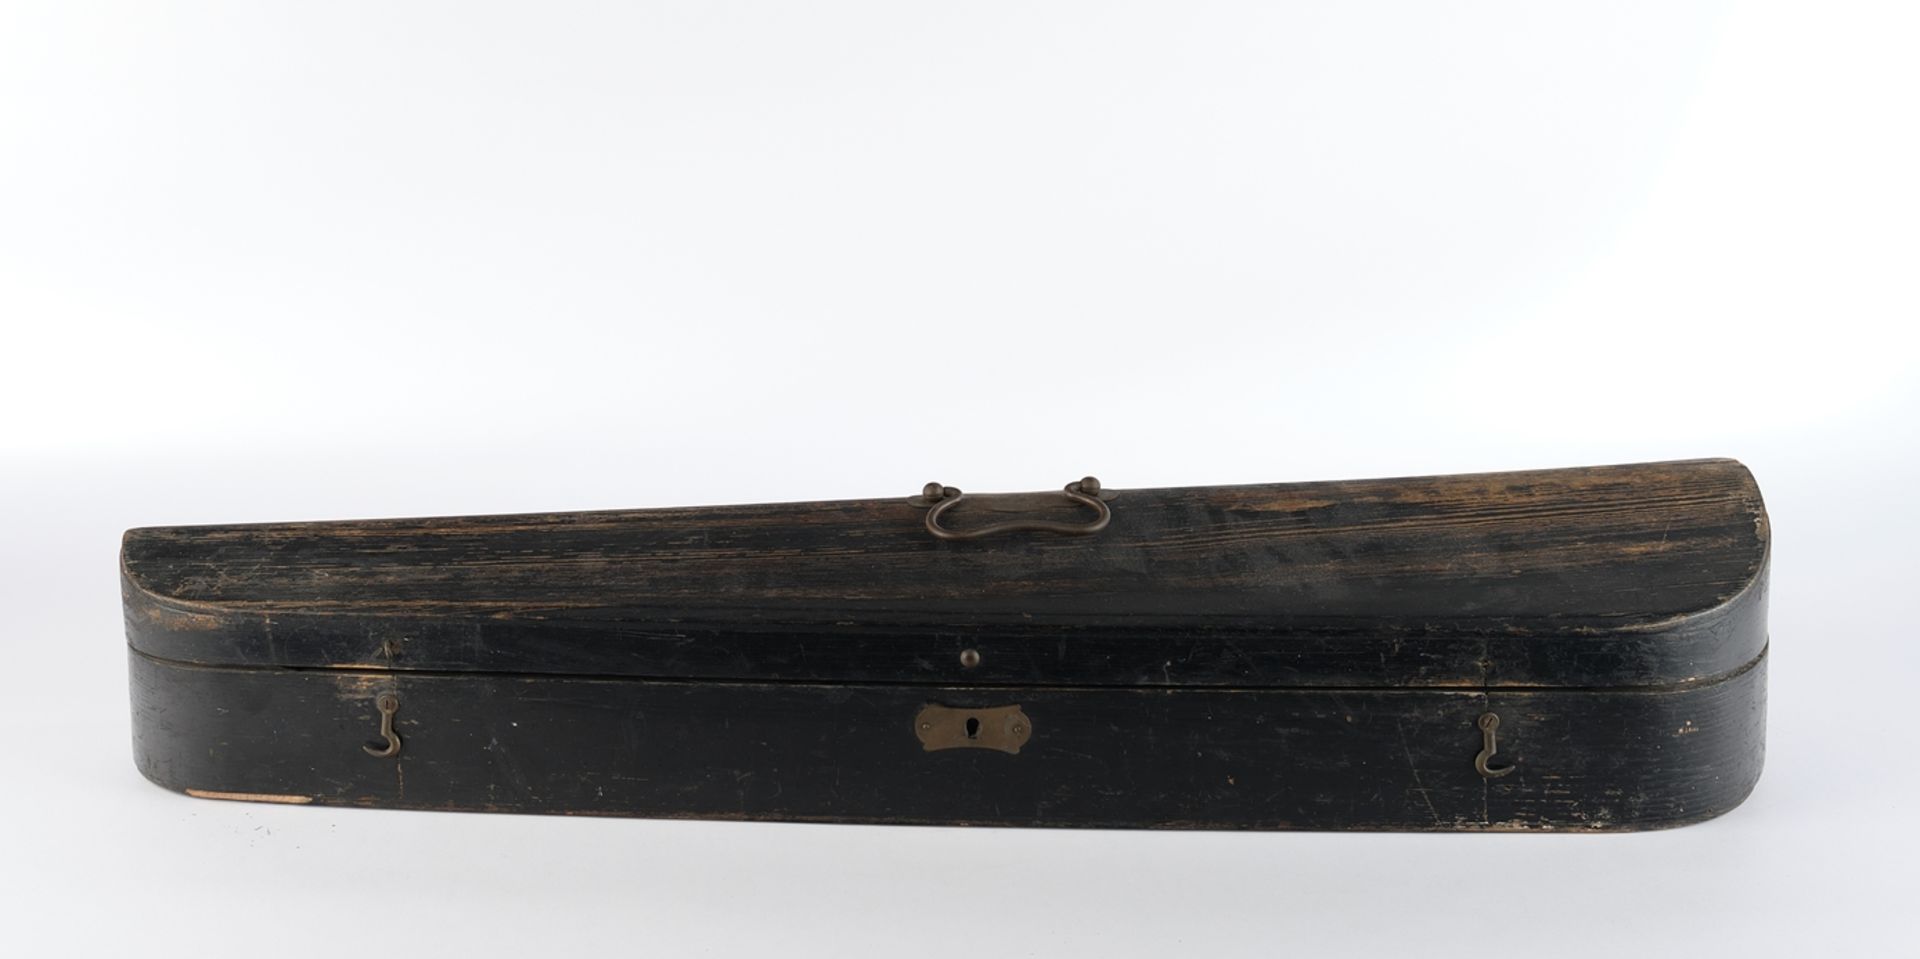 Violine, brauner Holzkorpus, unbezeichnet, 60 cm lang, mit Bogen und Koffer, Alters- und Gebrauchss - Bild 2 aus 8